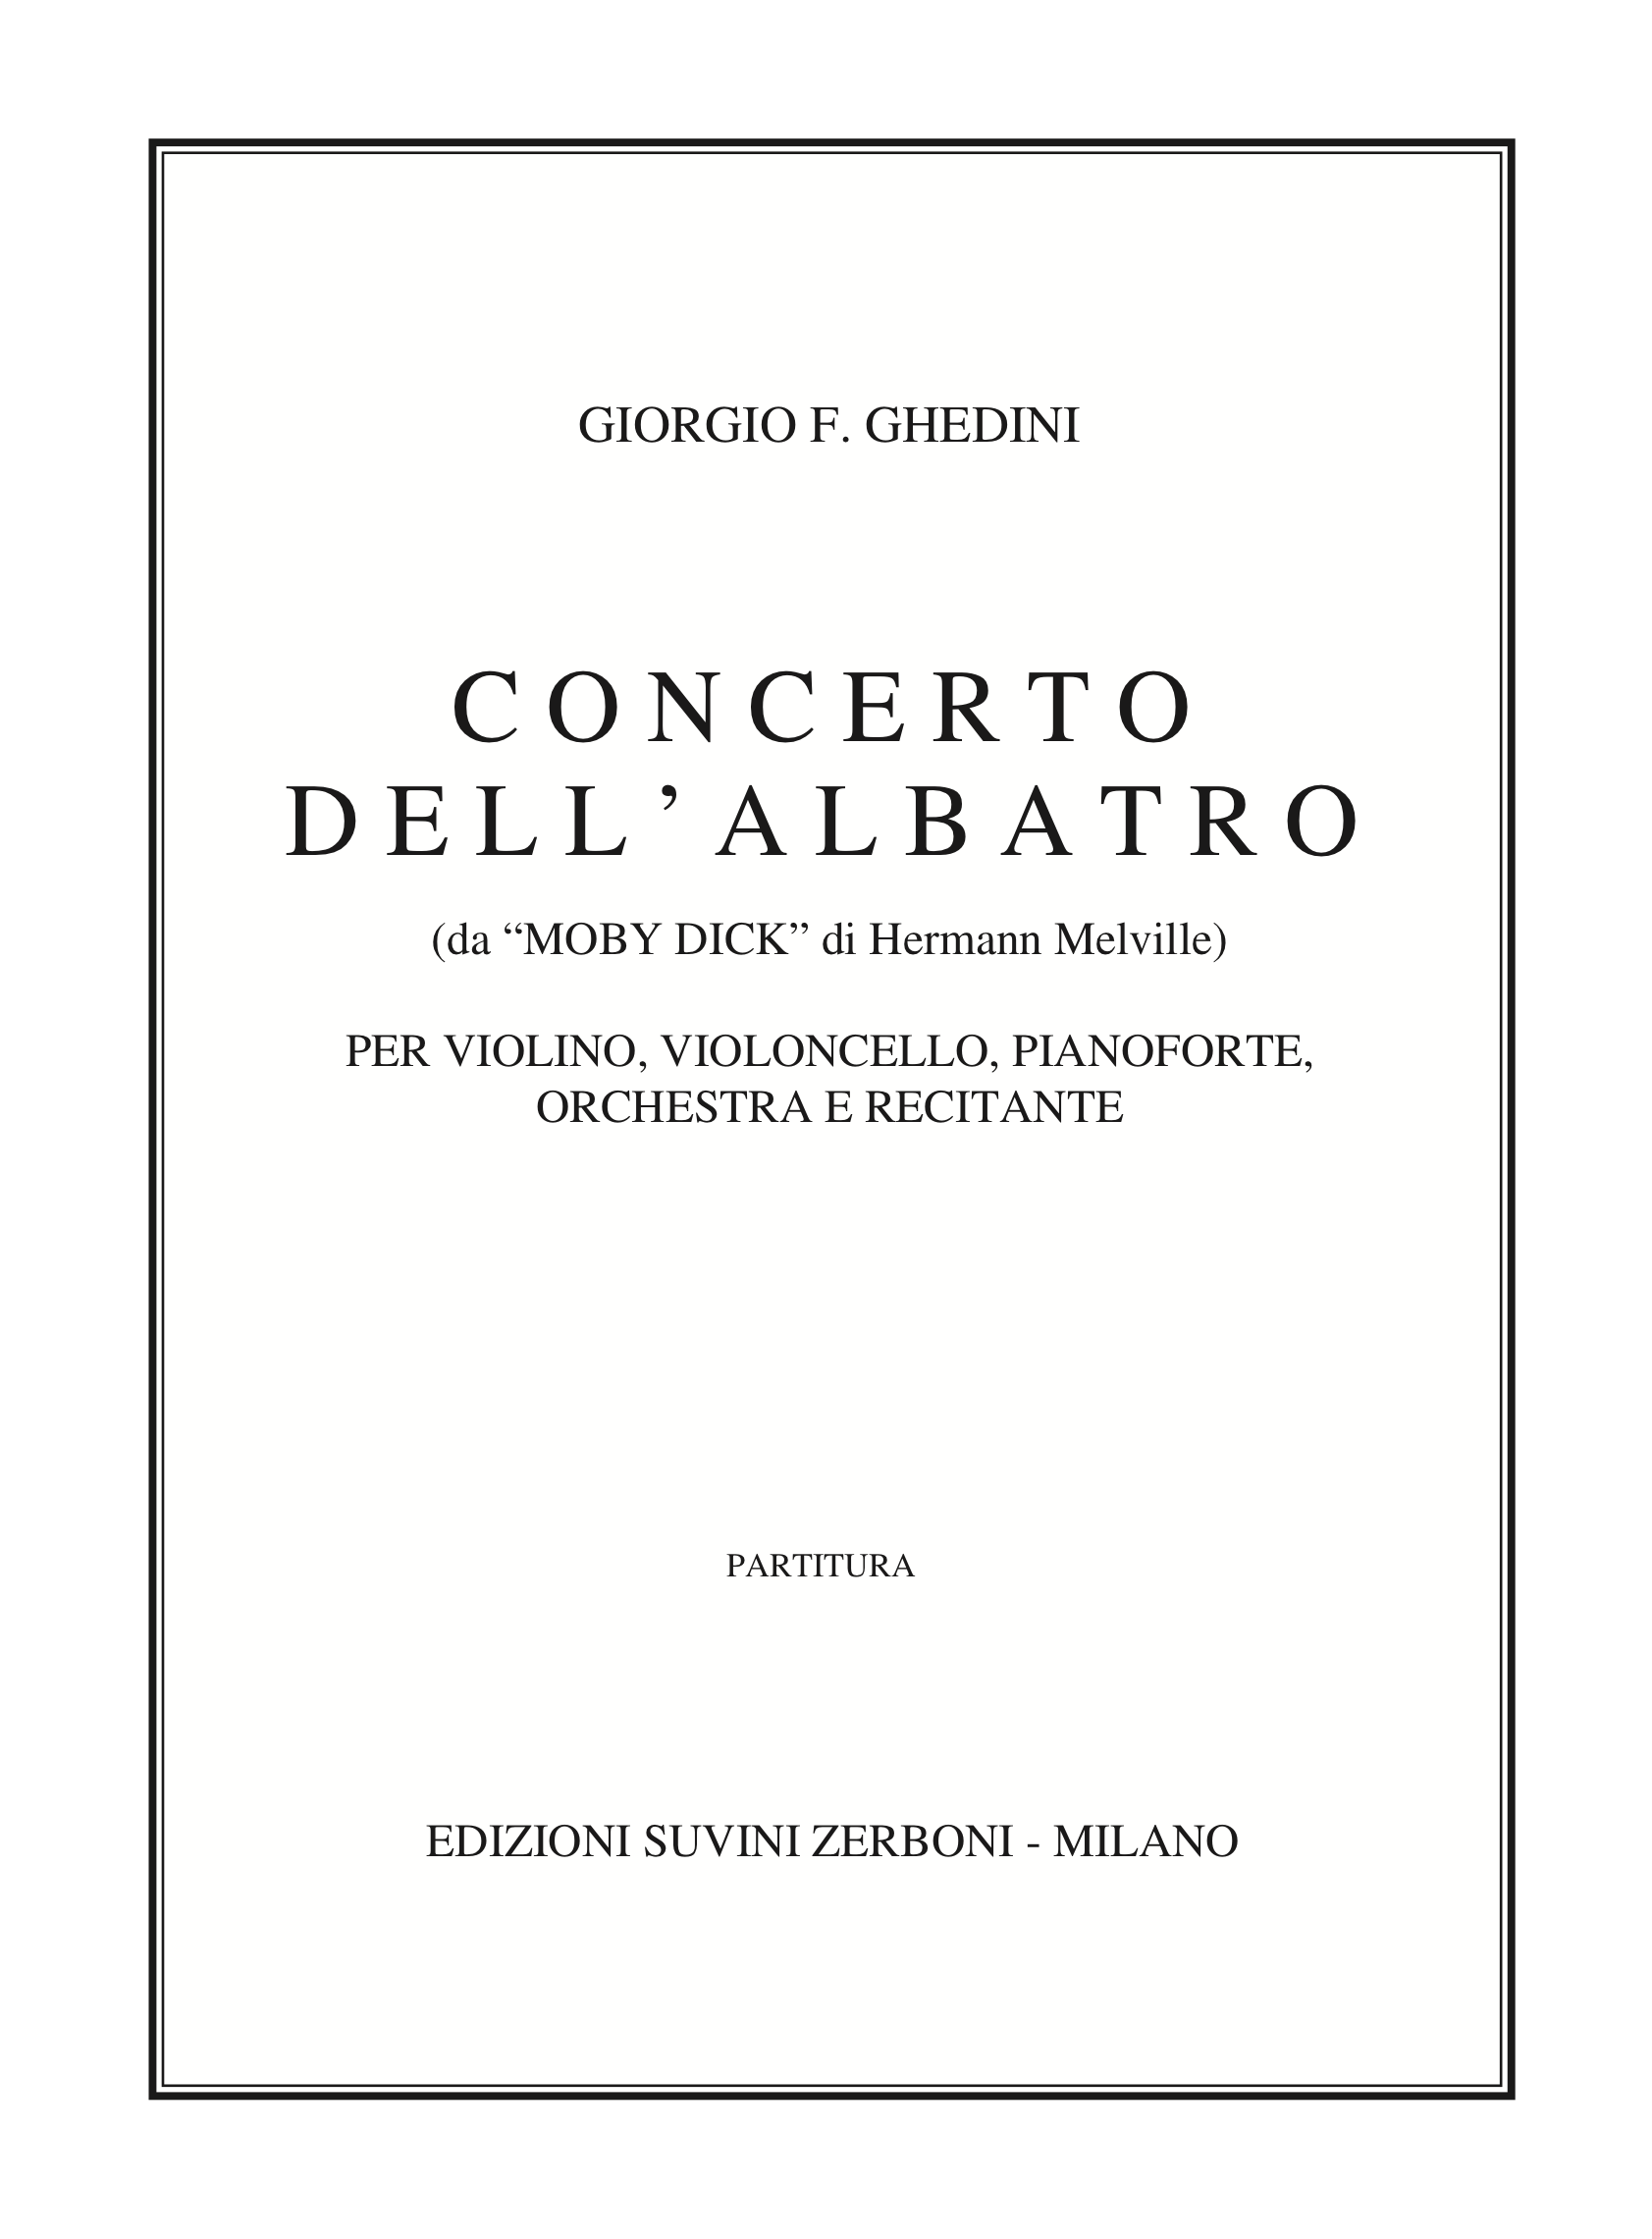 Concerto dell albatro_Ghedini 1